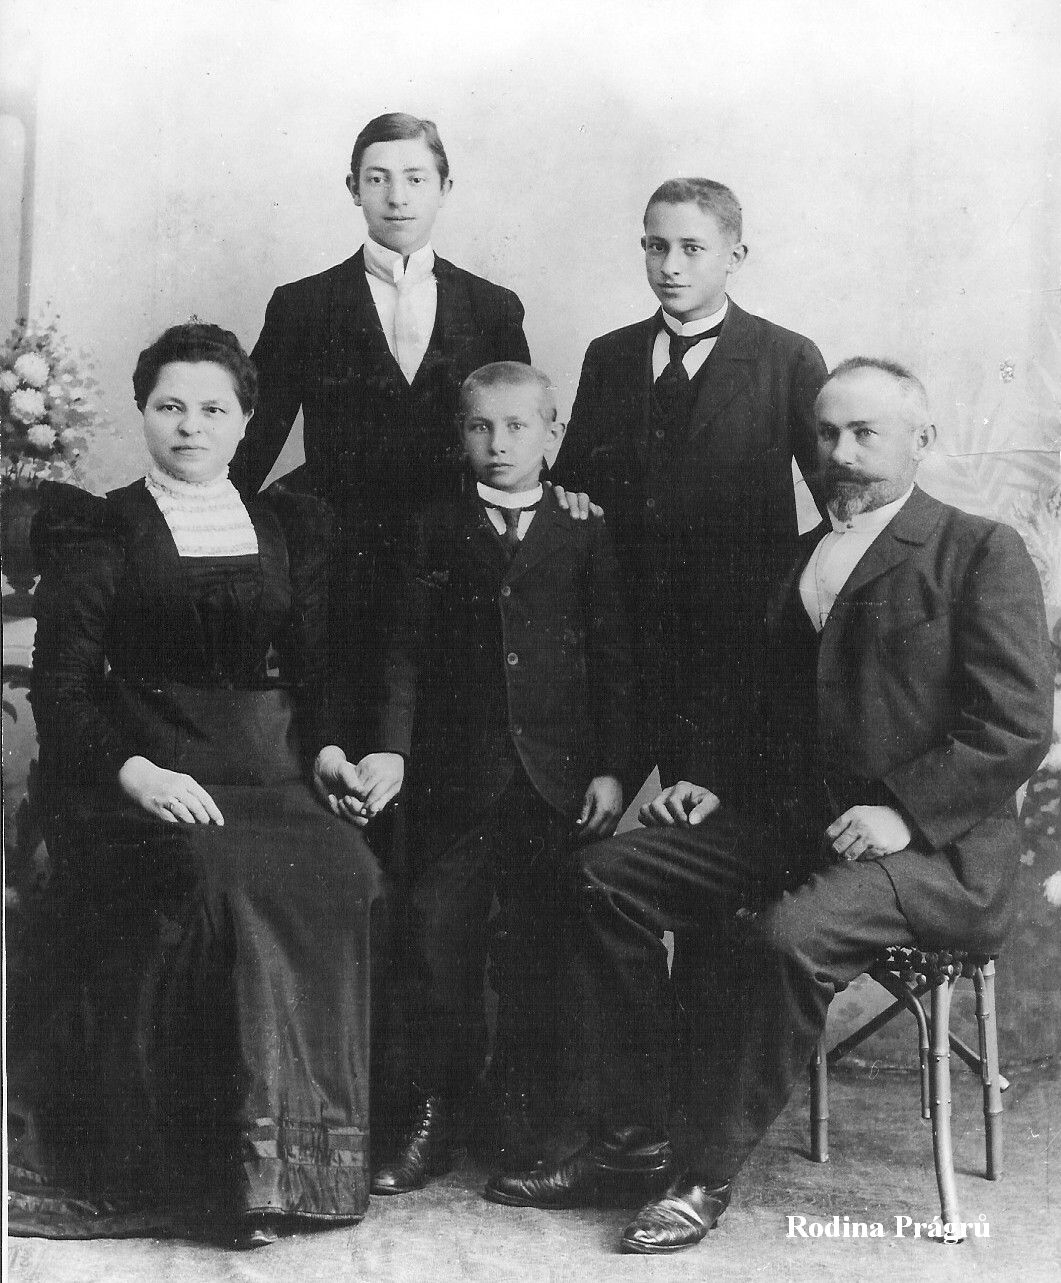 1900: rodina Prágrů